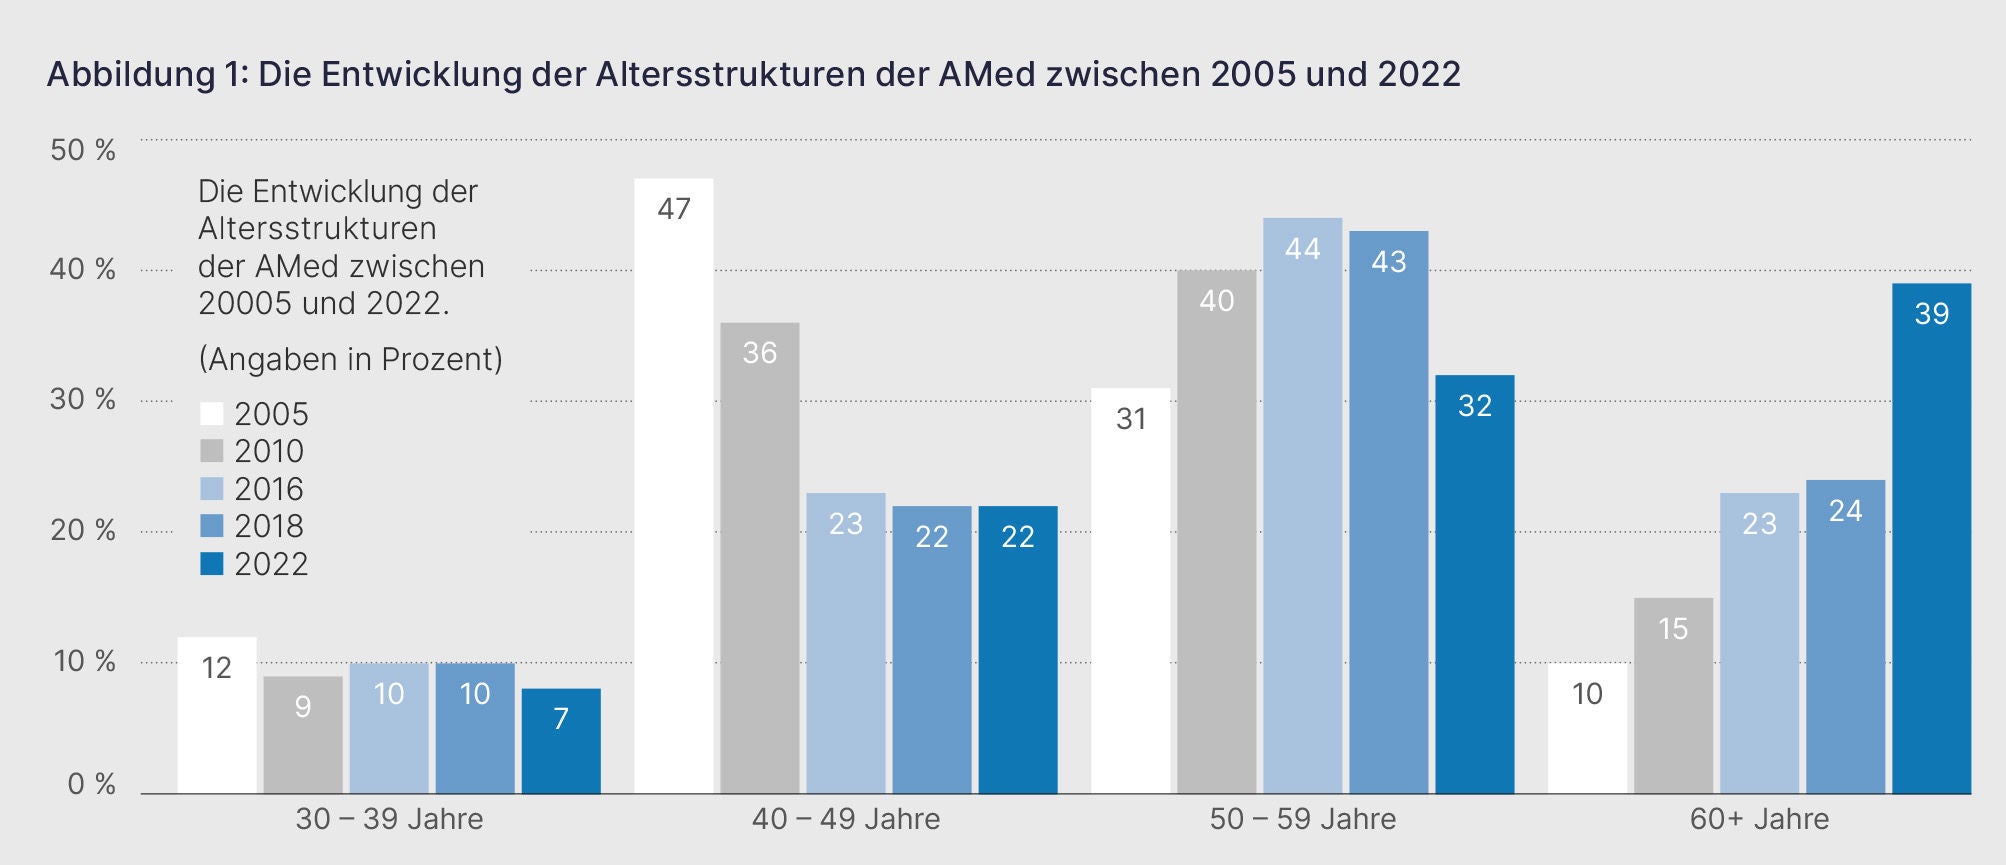 Abbildung zeigt die Entwicklung der Altersstrukturen der AMed zwischen 2005 und 2022